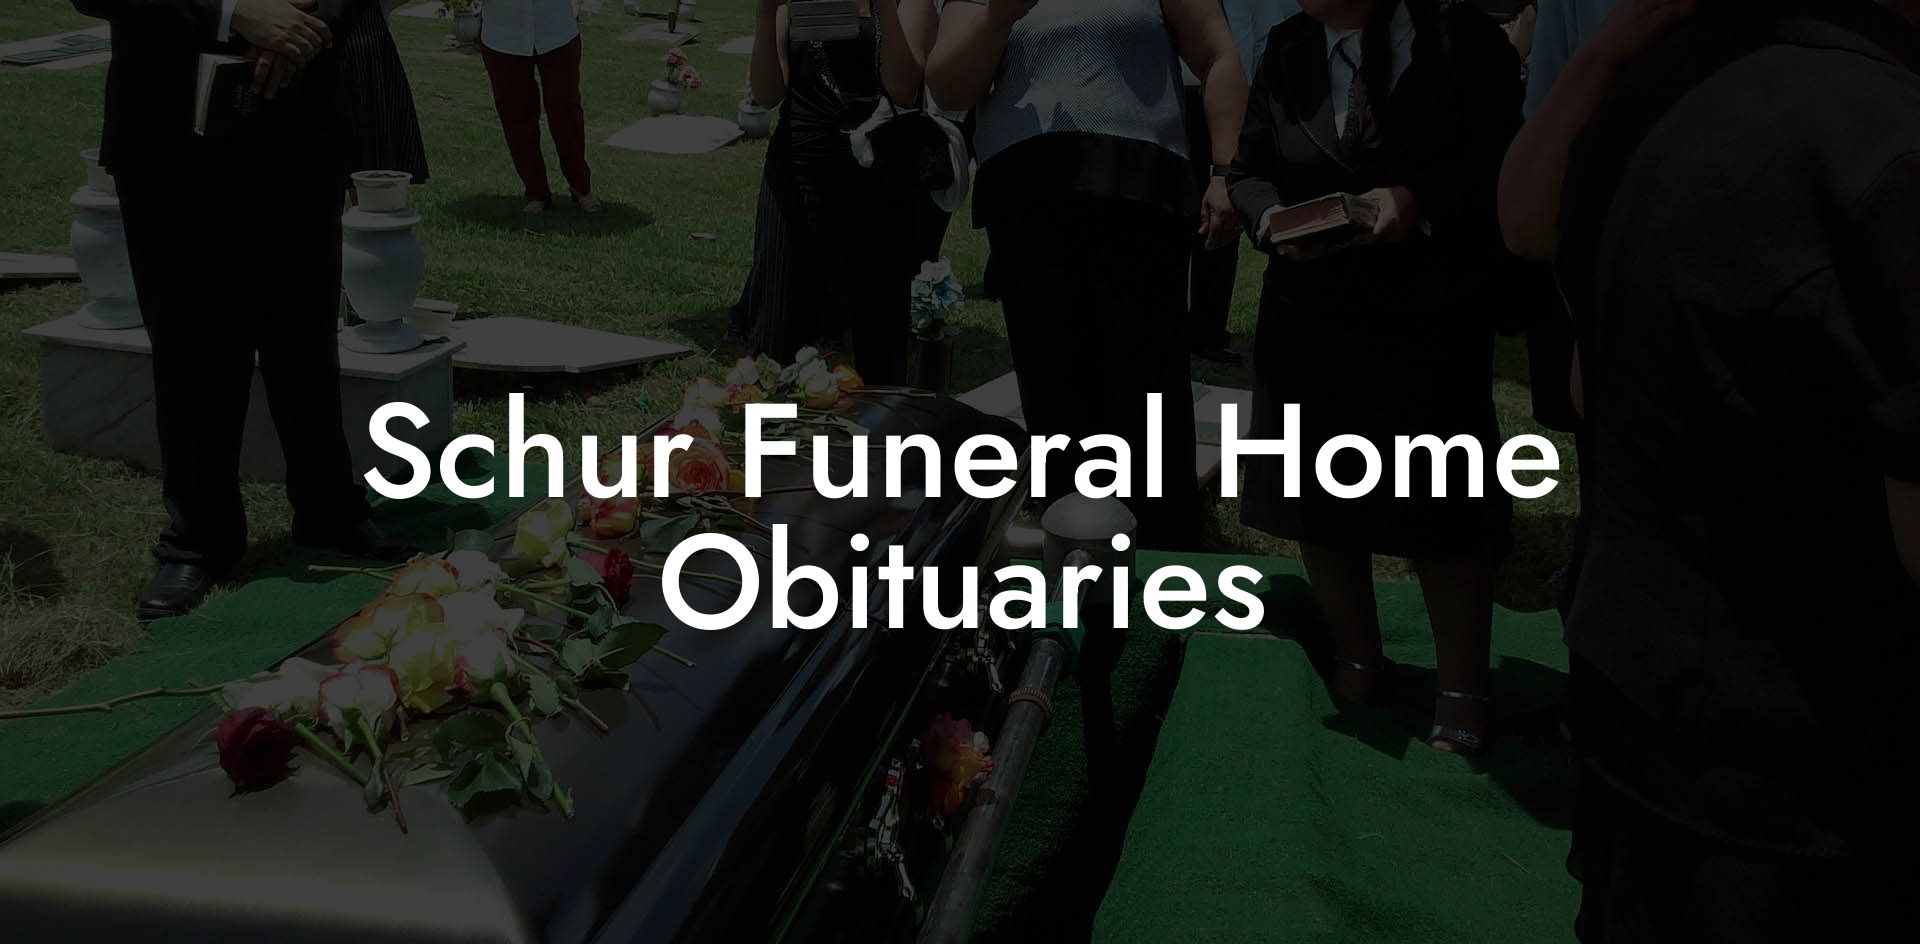 Schur Funeral Home Obituaries